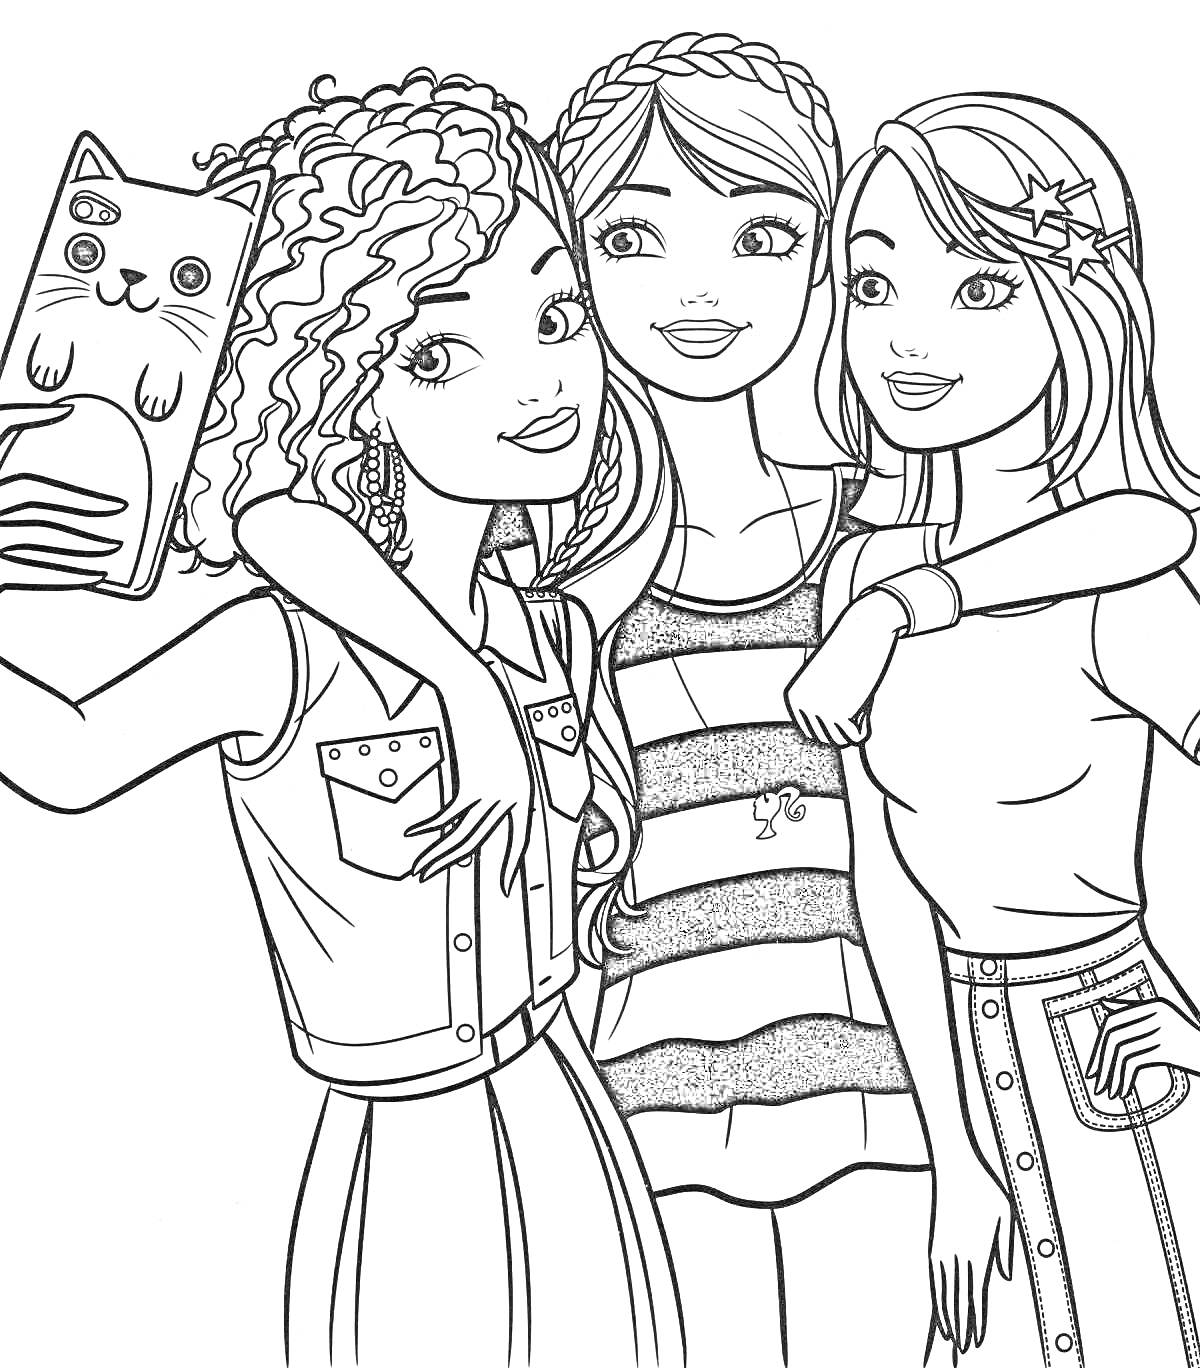 Раскраска Три подруги Барби делают селфи. Одна держит телефон с чехлом в виде котика, другая - в полосатом платье, третья - в джинсах с поясом.